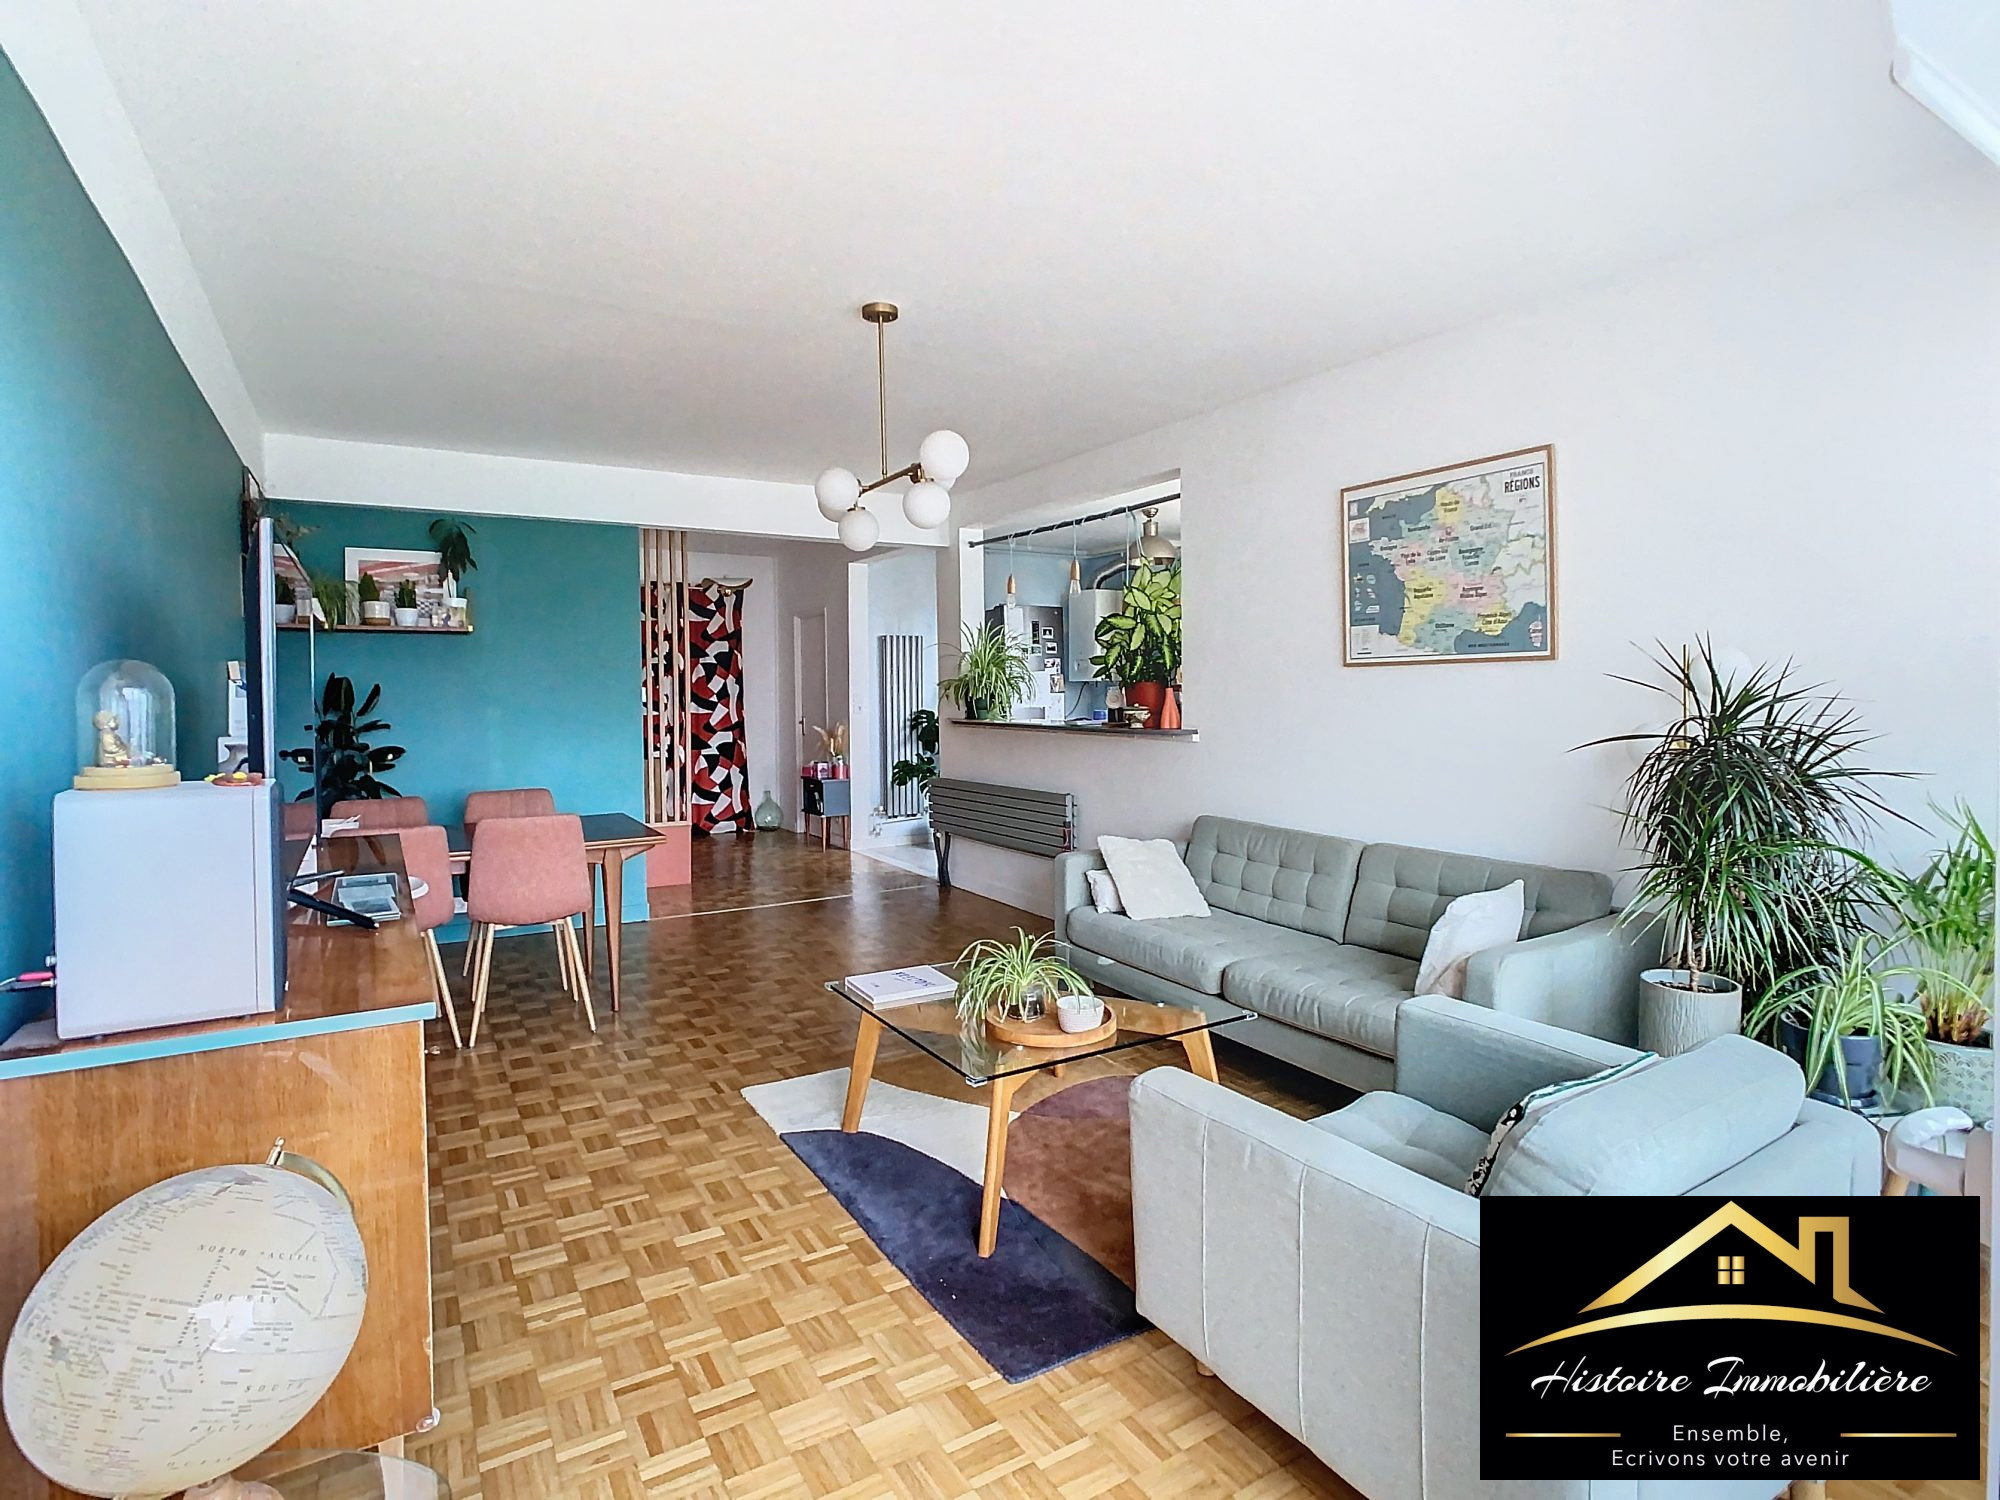 Vente Appartement 98m² 5 Pièces à Brest (29200) - Histoire Immobiliere